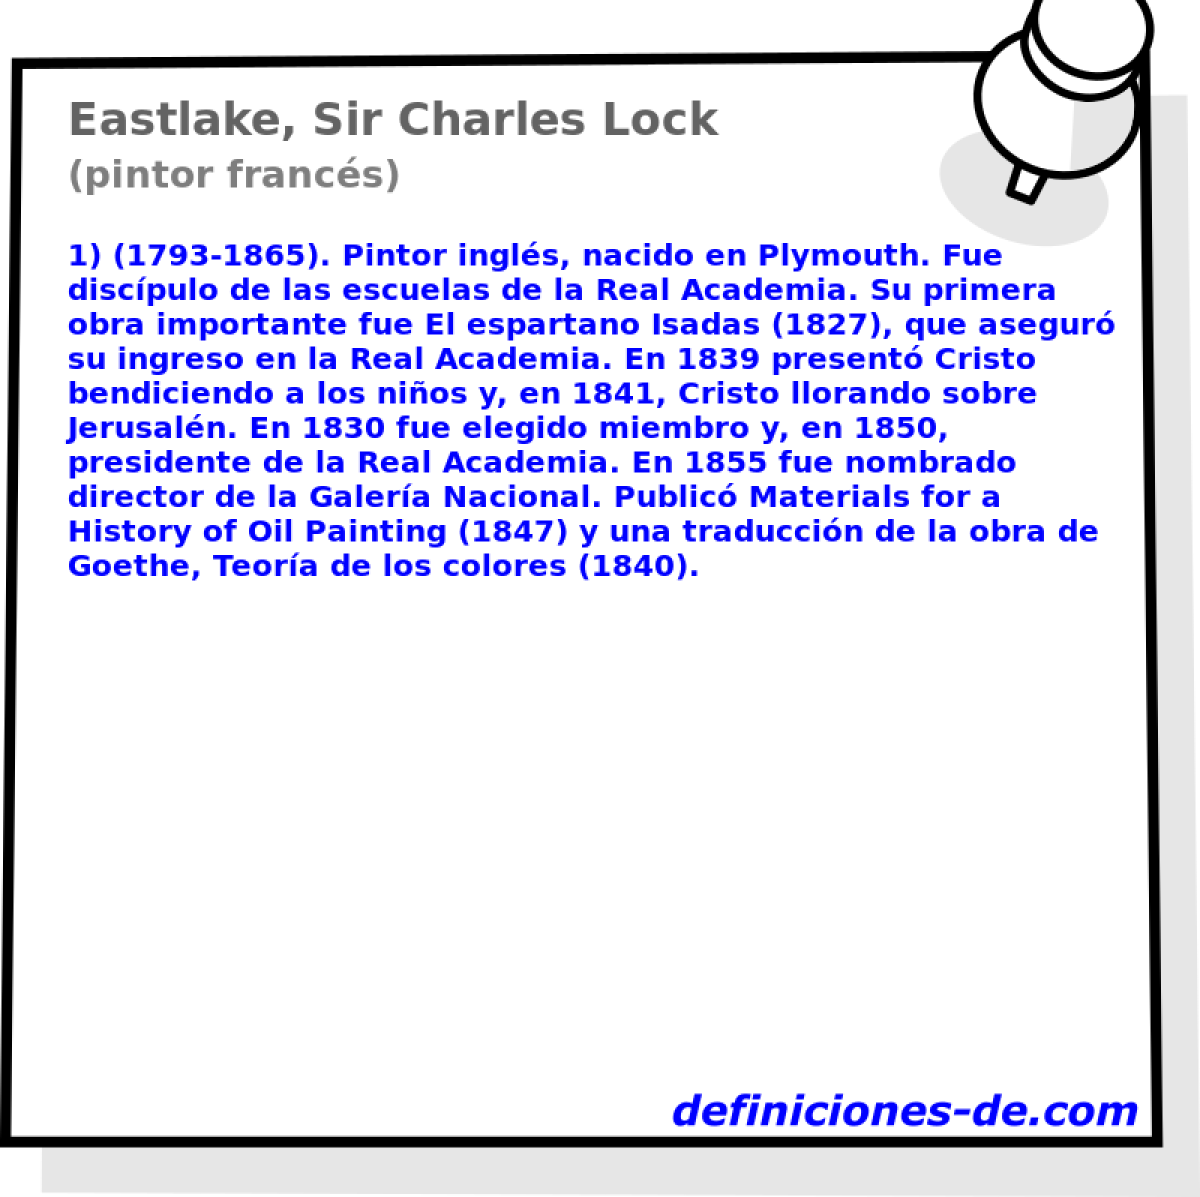 Eastlake, Sir Charles Lock (pintor francs)